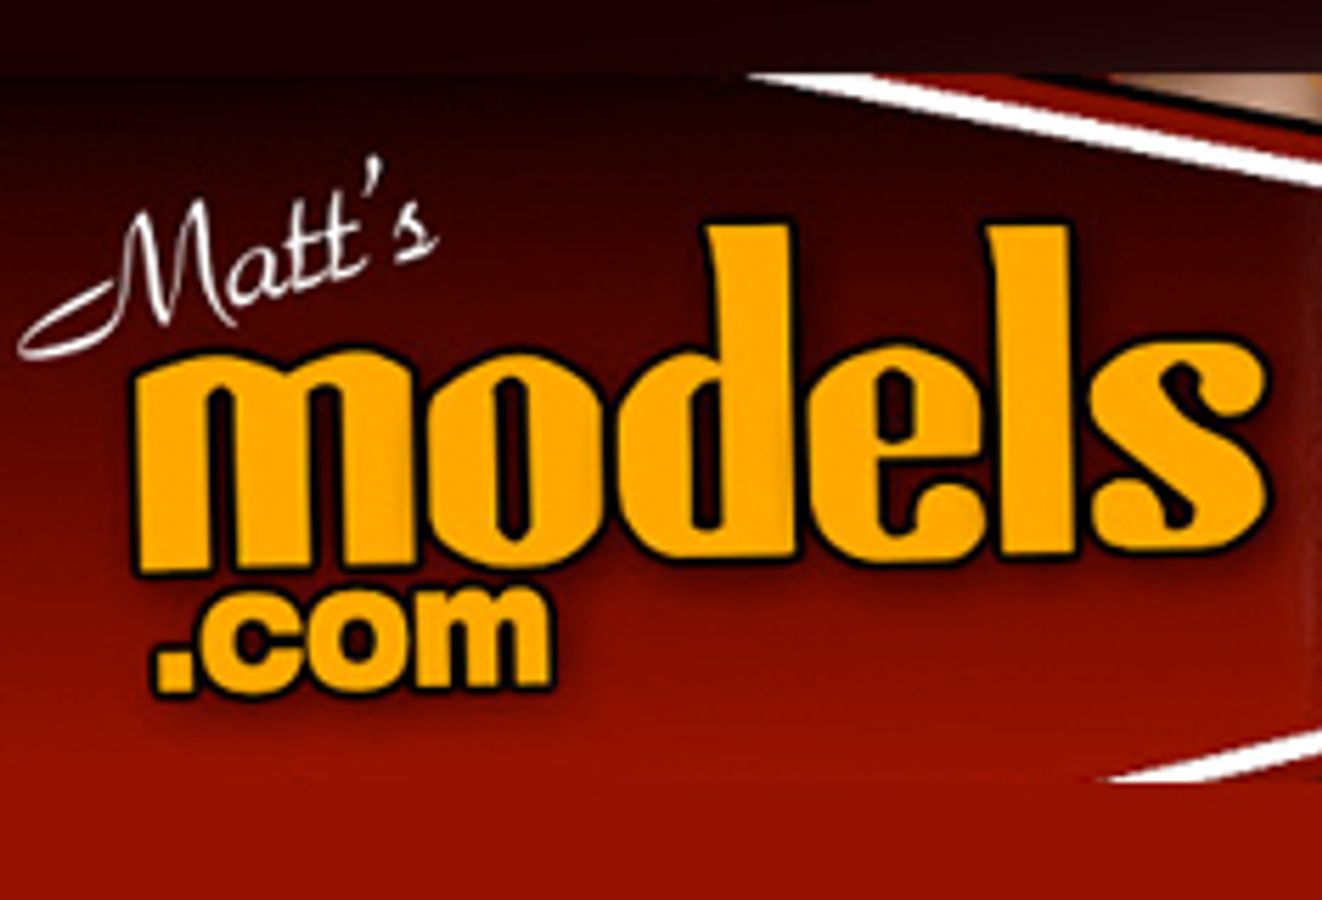 Matt's Models